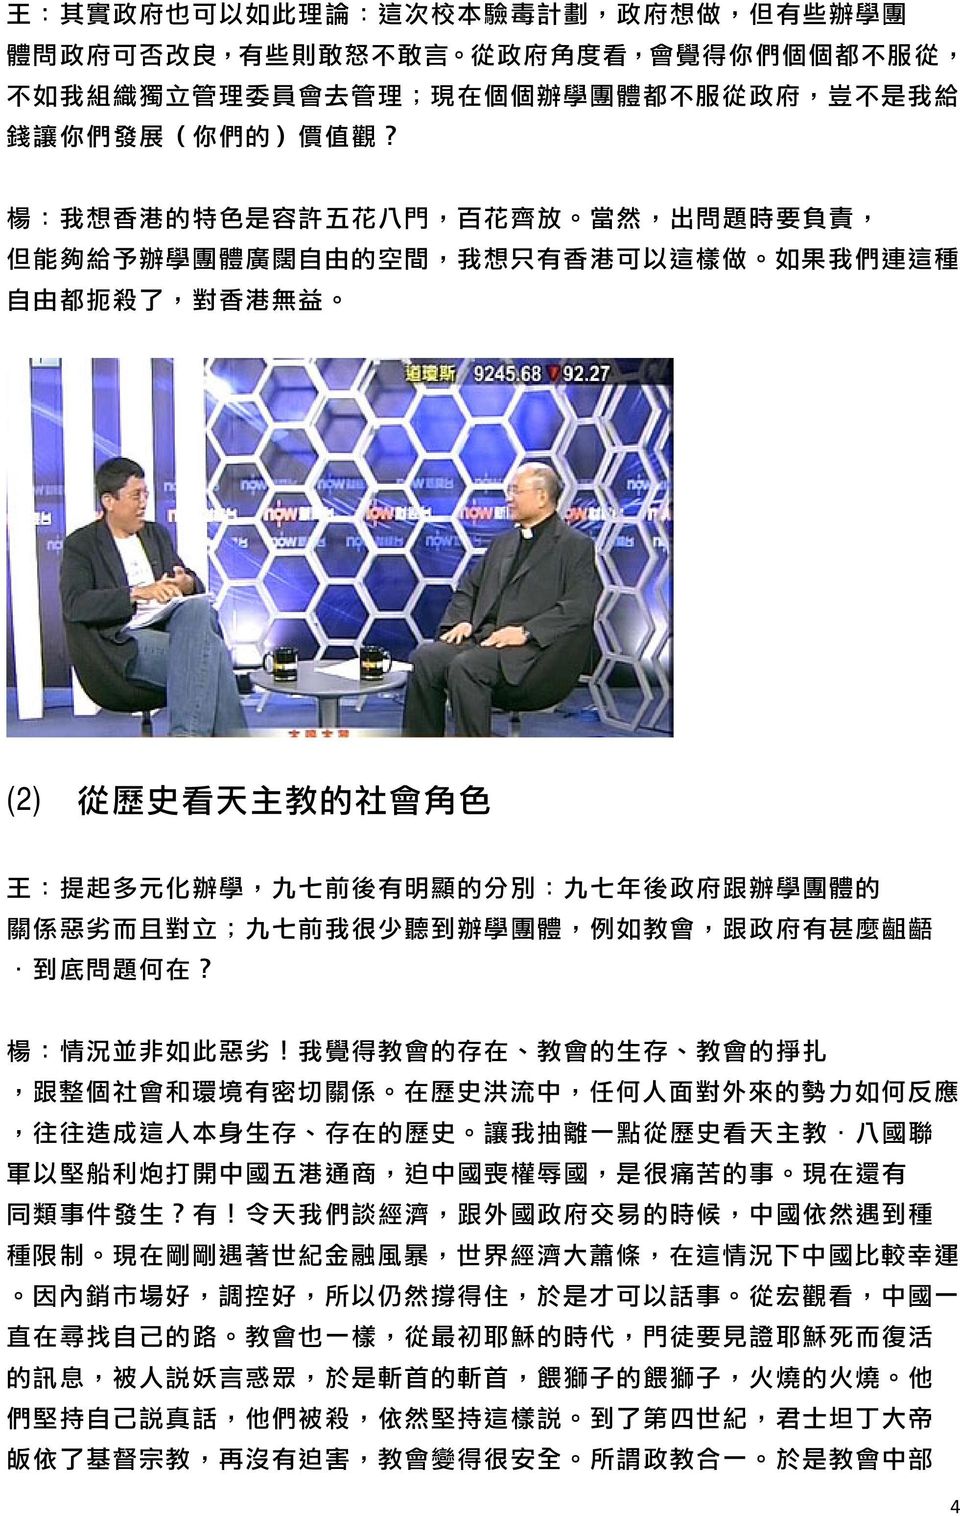 楊 : 我 想 香 港 的 特 色 是 容 許 五 花 八 門, 百 花 齊 放 當 然, 出 問 題 時 要 負 責, 但 能 夠 給 予 辦 學 團 體 廣 闊 自 由 的 空 間, 我 想 只 有 香 港 可 以 這 樣 做 如 果 我 們 連 這 種 自 由 都 扼 殺 了, 對 香 港 無 益 (2) 從 歷 史 看 天 主 教 的 社 會 角 色 王 : 提 起 多 元 化 辦 學,